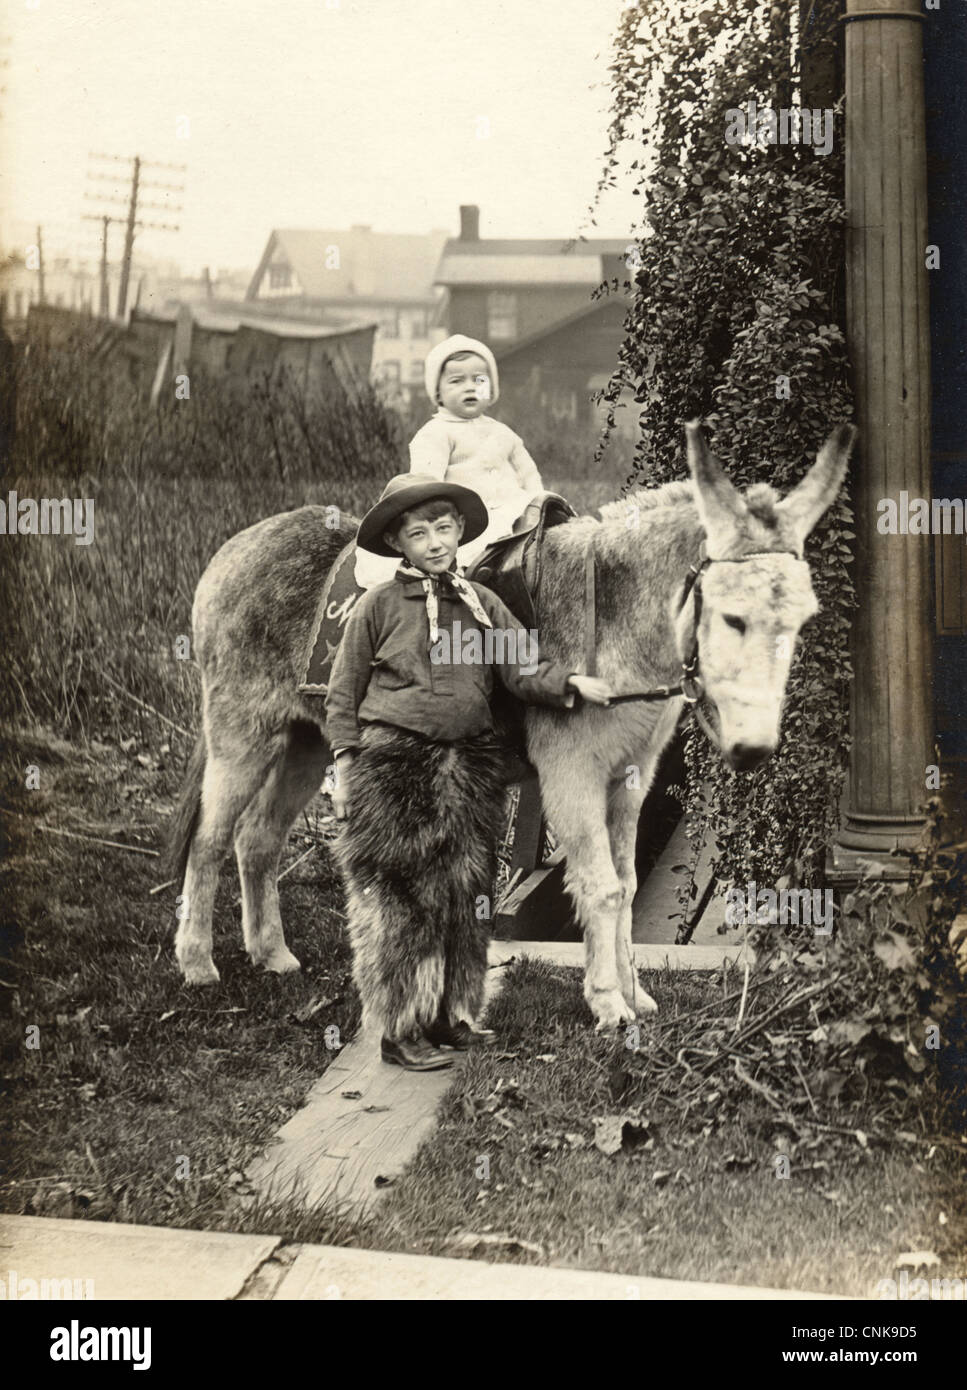 Kleiner Cowboy mit Kleinkind Geschwister auf einem Esel Stockfoto